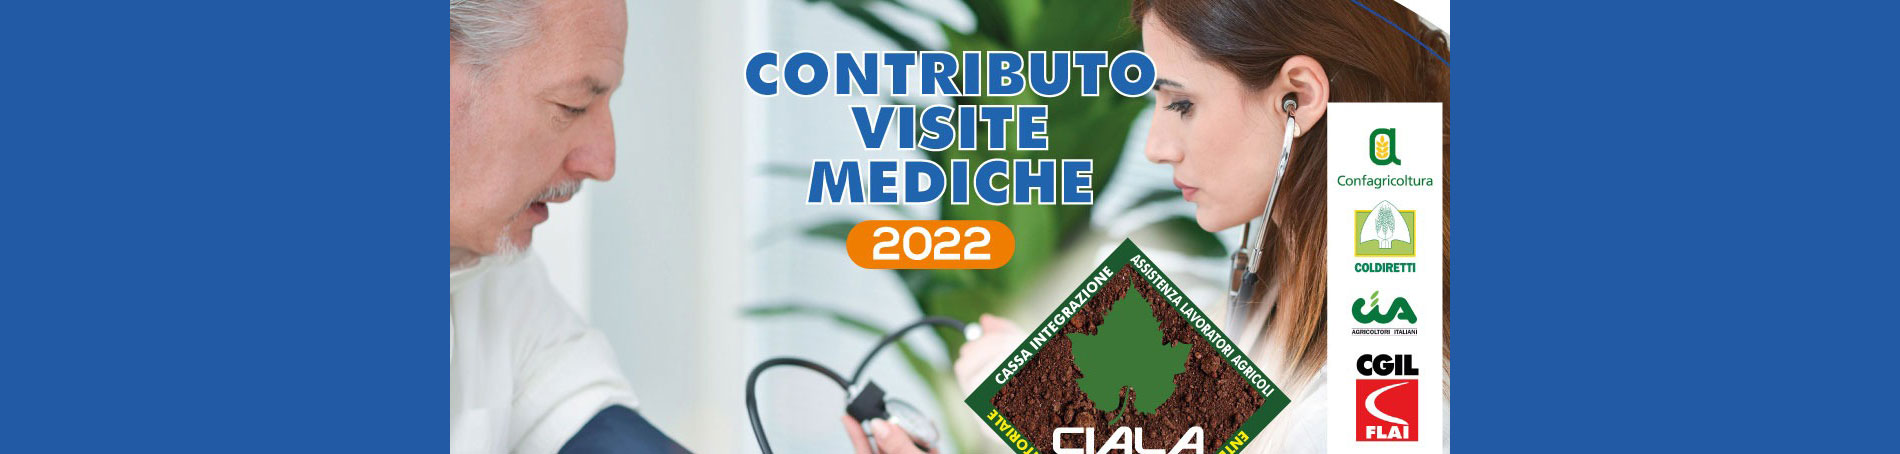 Contributo Visite Mediche Anno 2022